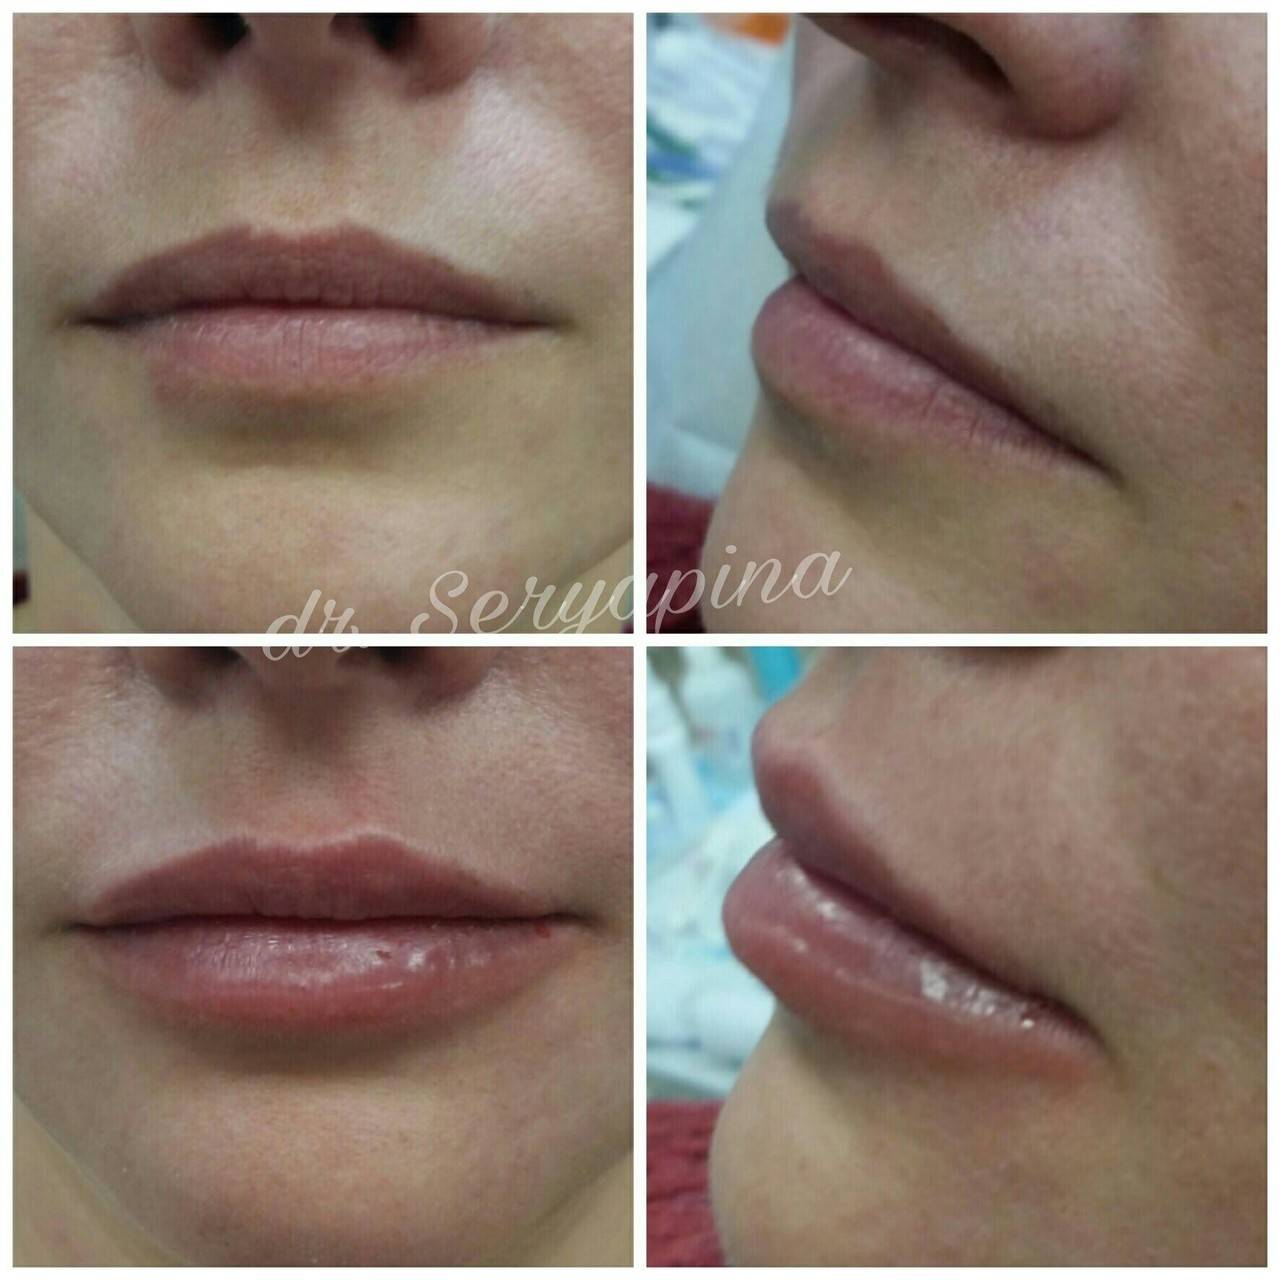 Хейлопластика (пластика губ), увеличение губ операцией | стоимость коррекции верхней и нижней губы